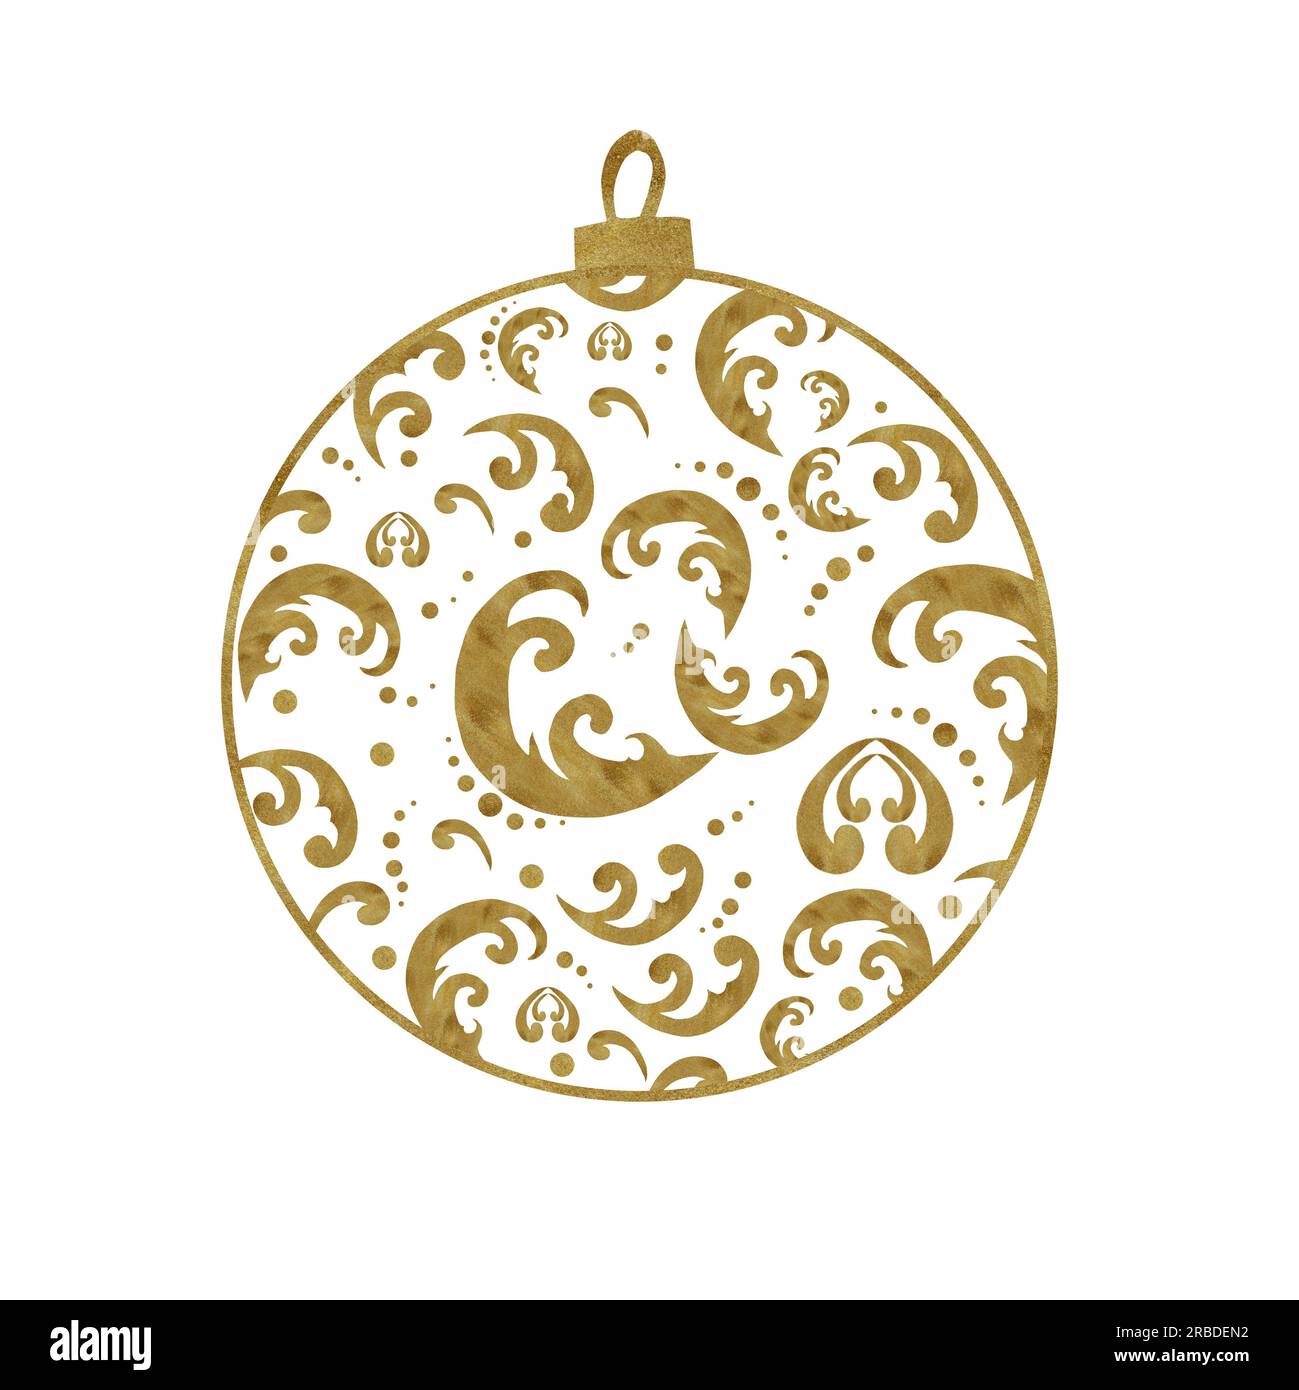 Handgezeichneter Weihnachtsbaumball in Aquarellfarben. Lacy Spielzeug mit goldener Textur zum Dekorieren. Zwei Optionen – auf weißem und transparentem Hintergrund Stockfoto